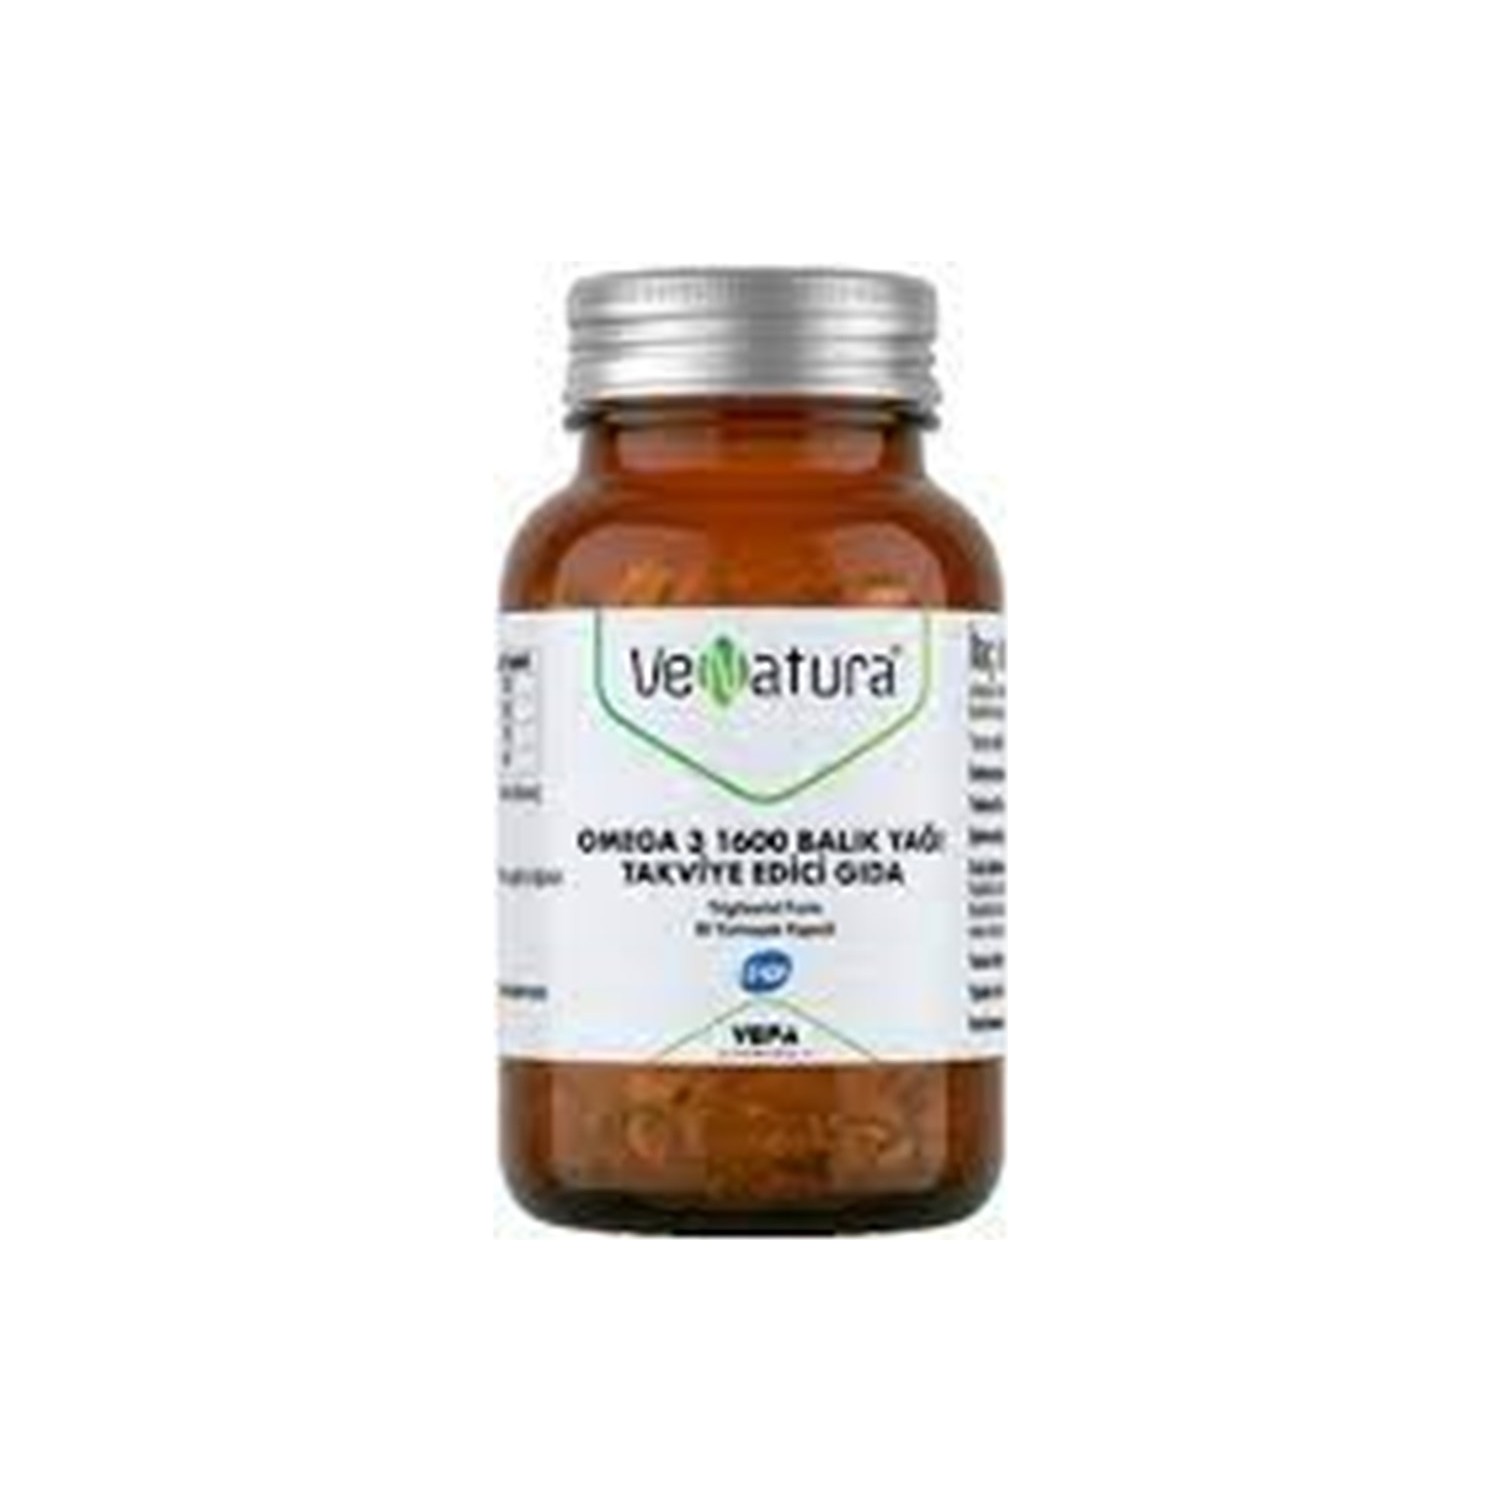 Омега-3 Venatura, 1600 мг, 30 капсул